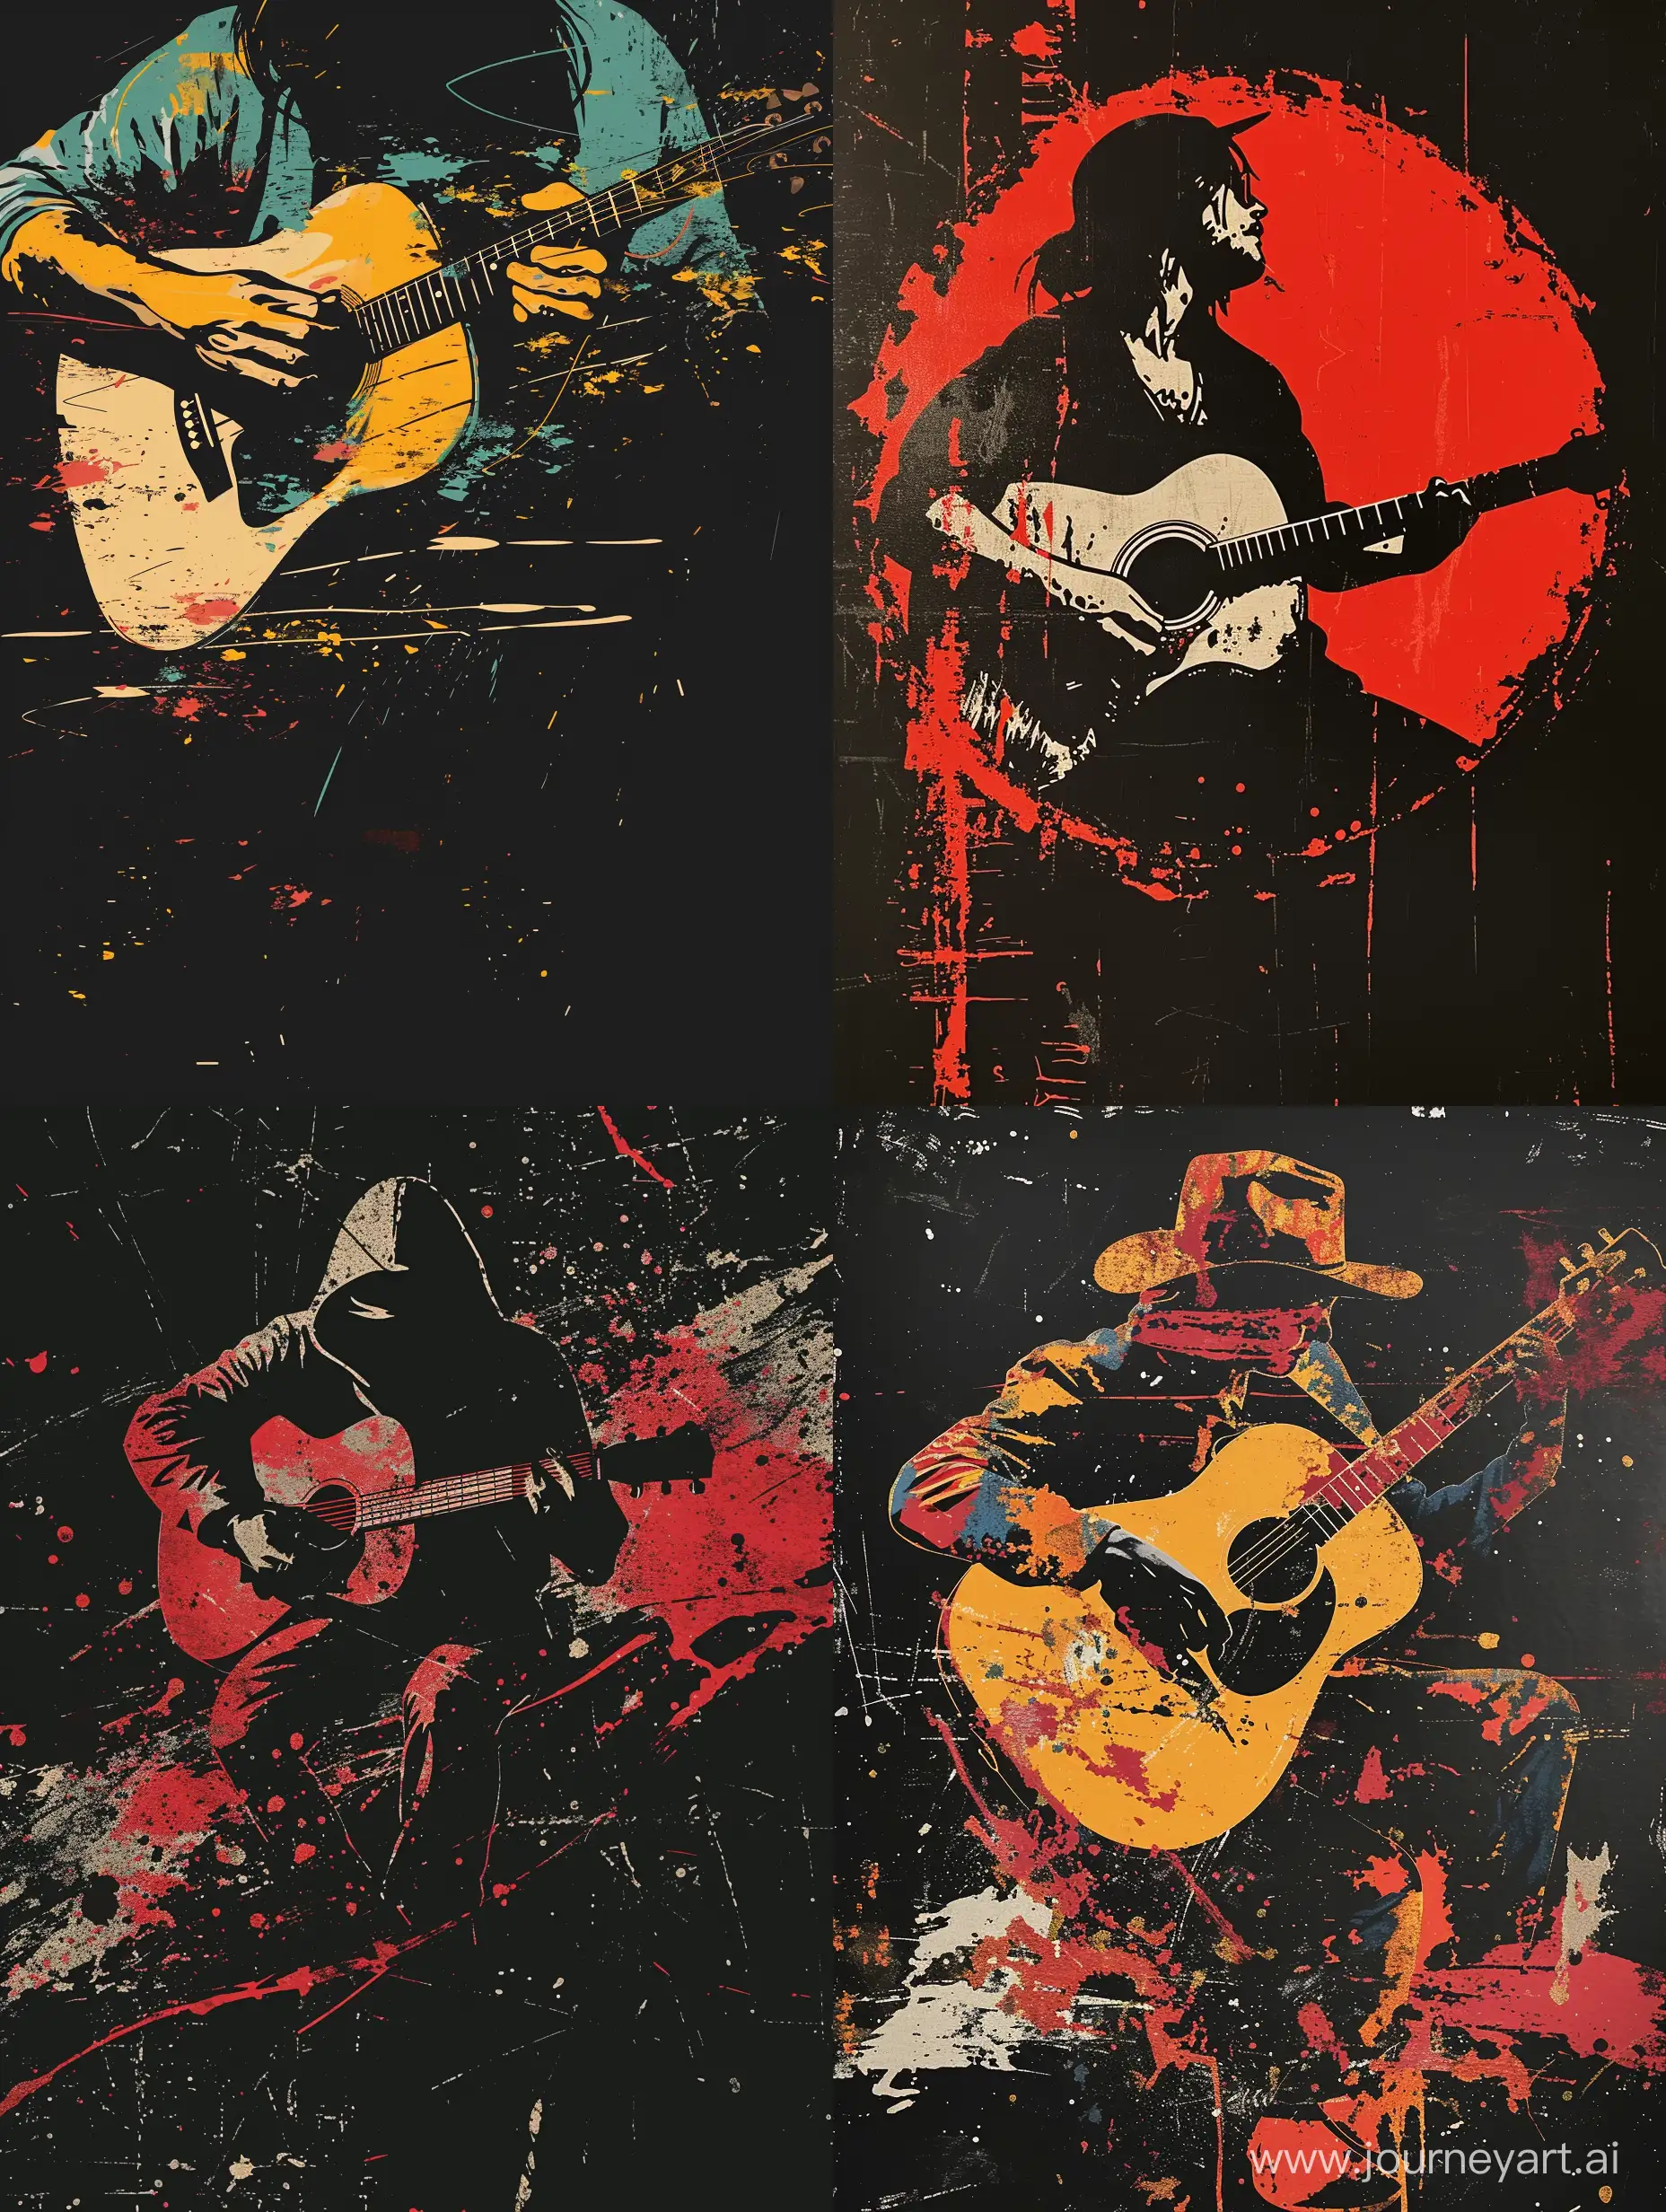 Genere une affiche de spectacle sur fond noir ayant pour thématique guitariste acoustique dans le style Banksy